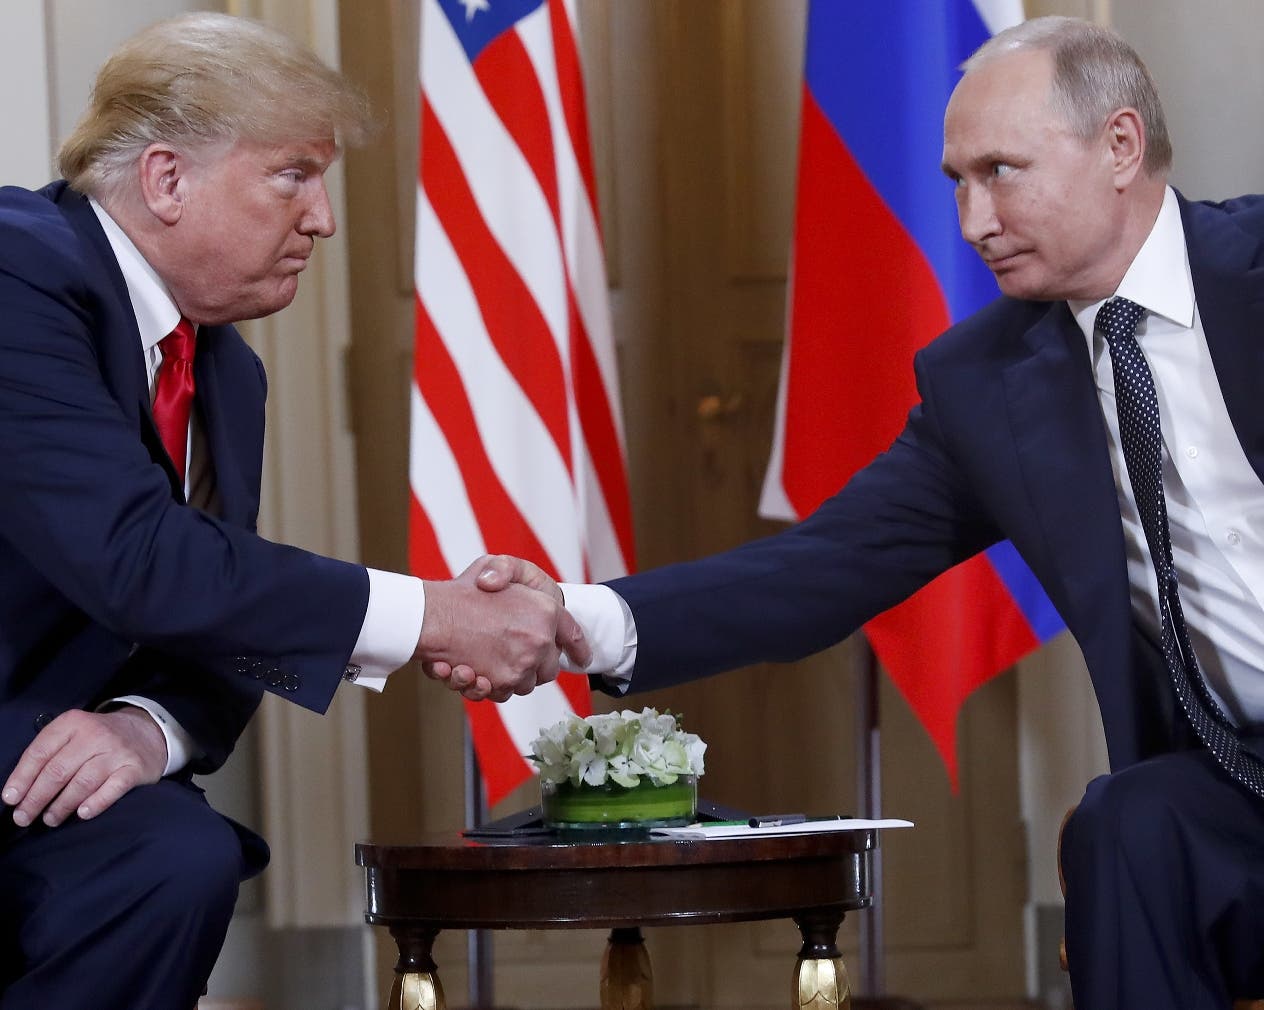 Donald Trump recibiÃ³ una ola  de crÃ­ticas respecto a su comportamiento con Vladimir Putin.